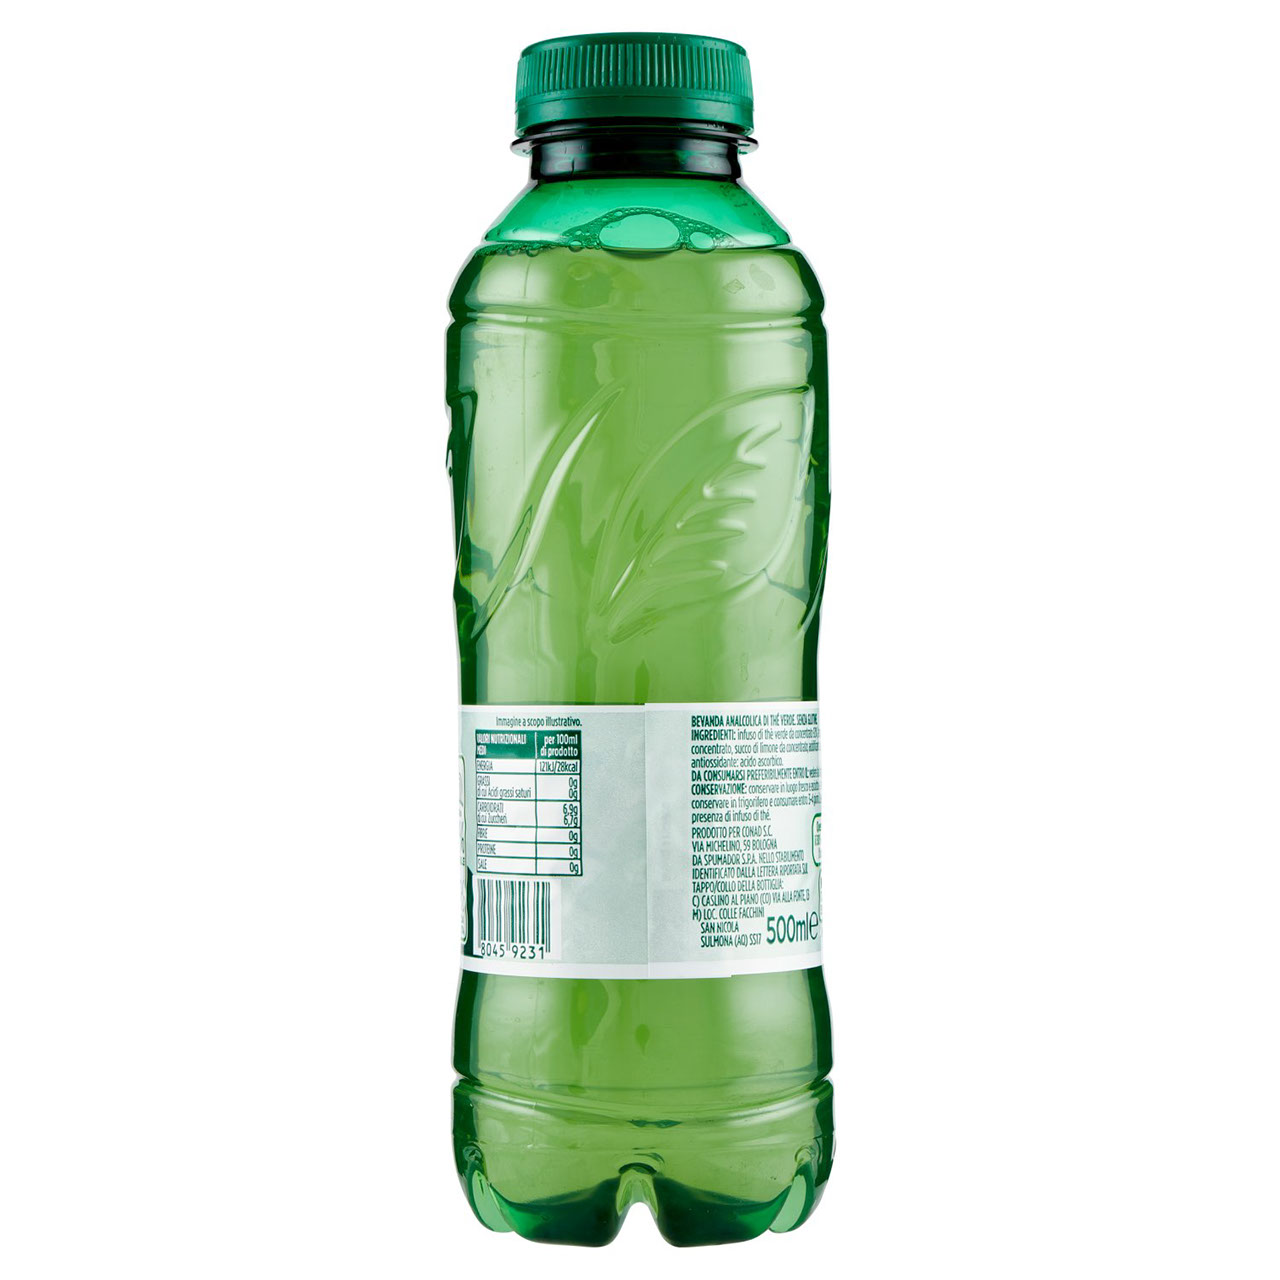 Thè Verde 500 ml Conad in vendita online